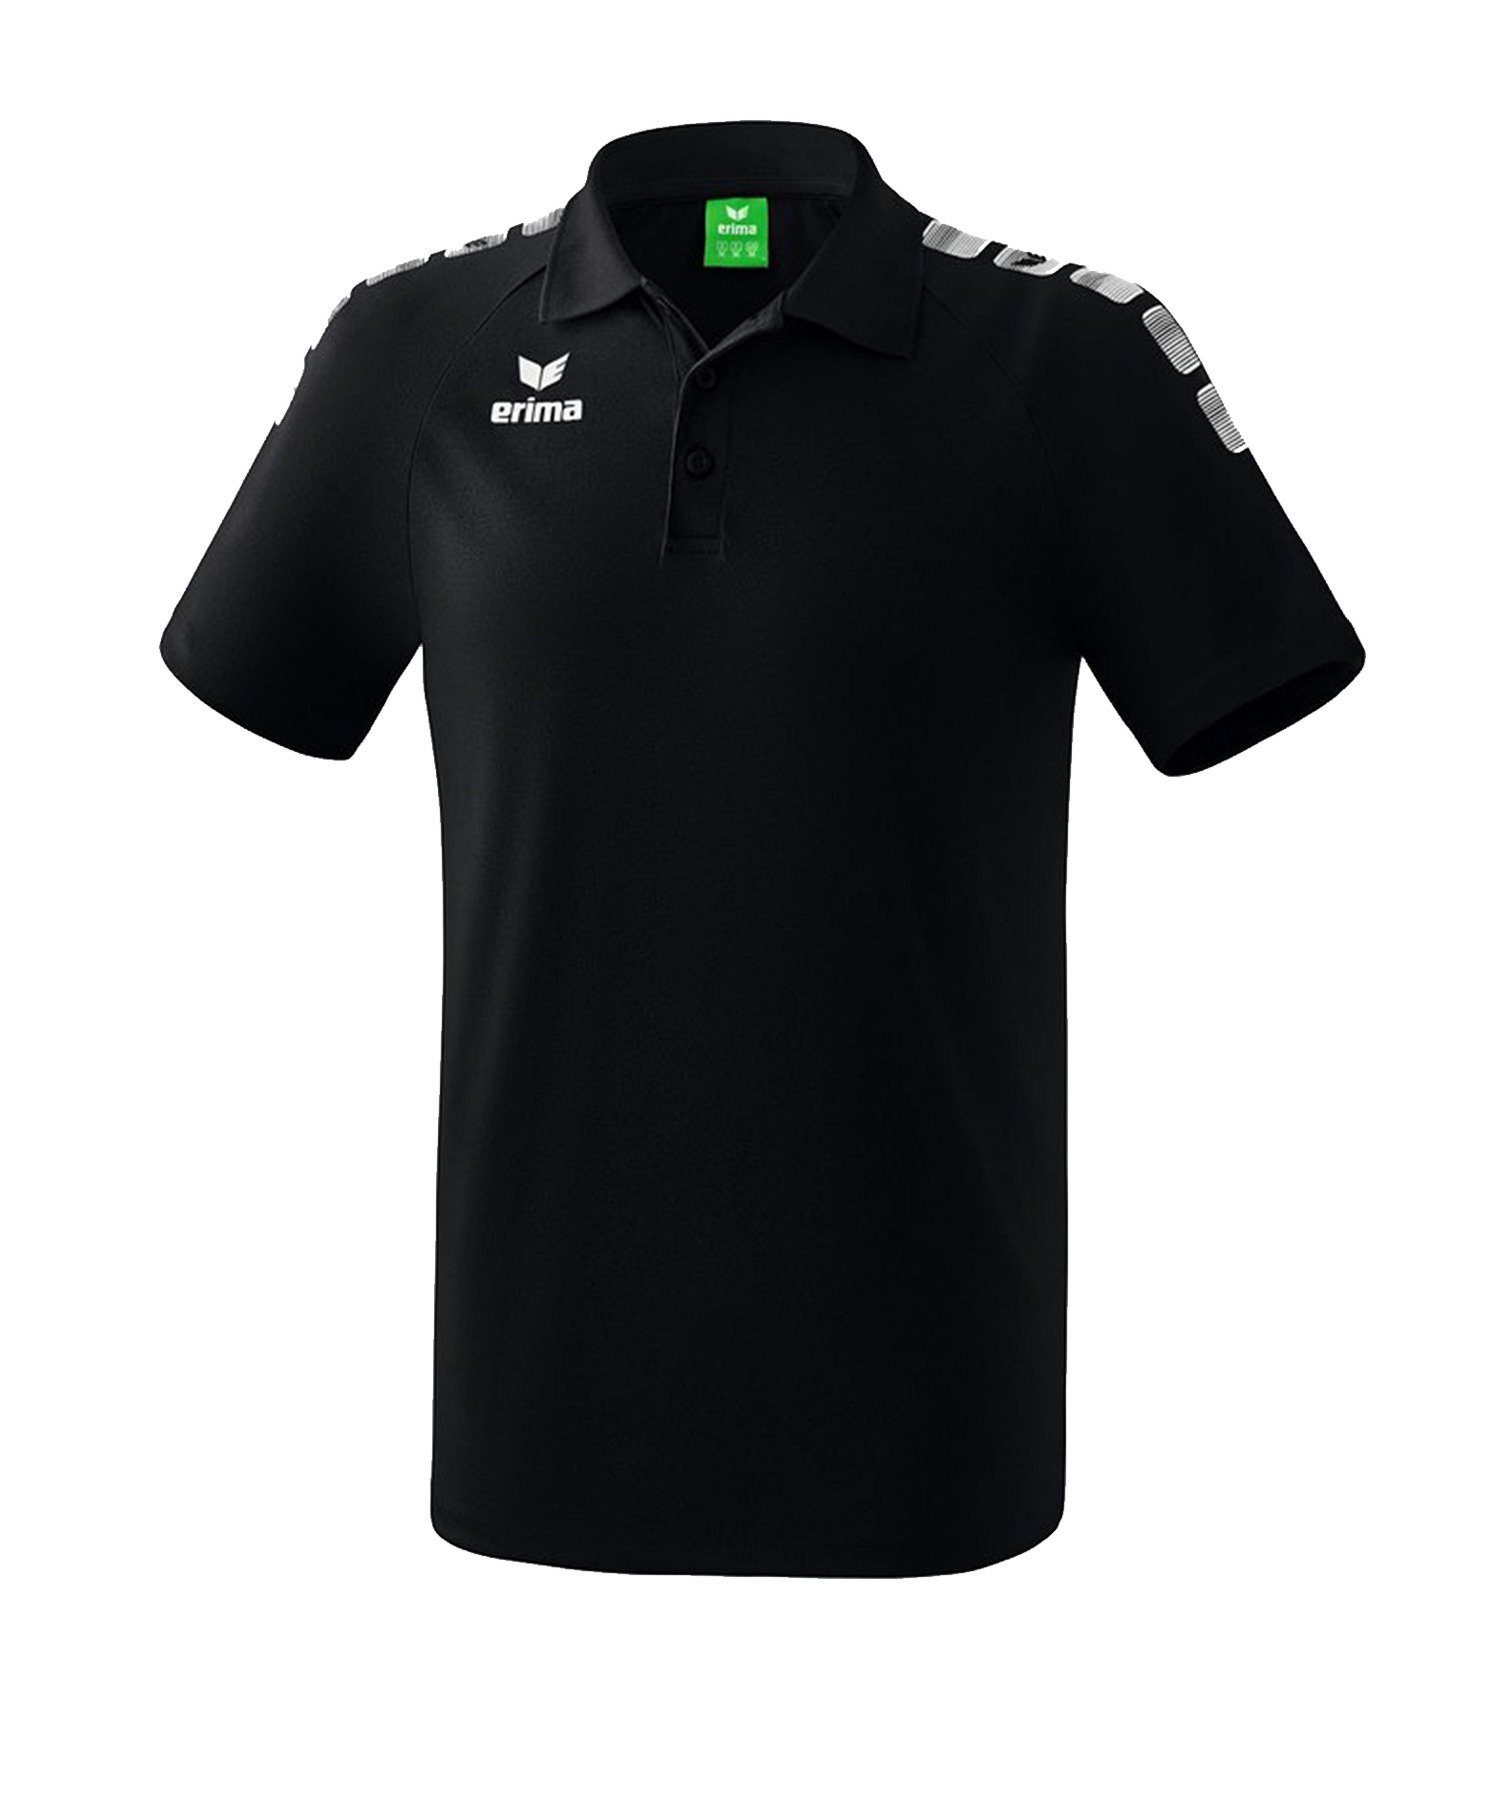 Erima 5-C Poloshirt SchwarzWeiss Essential T-Shirt default